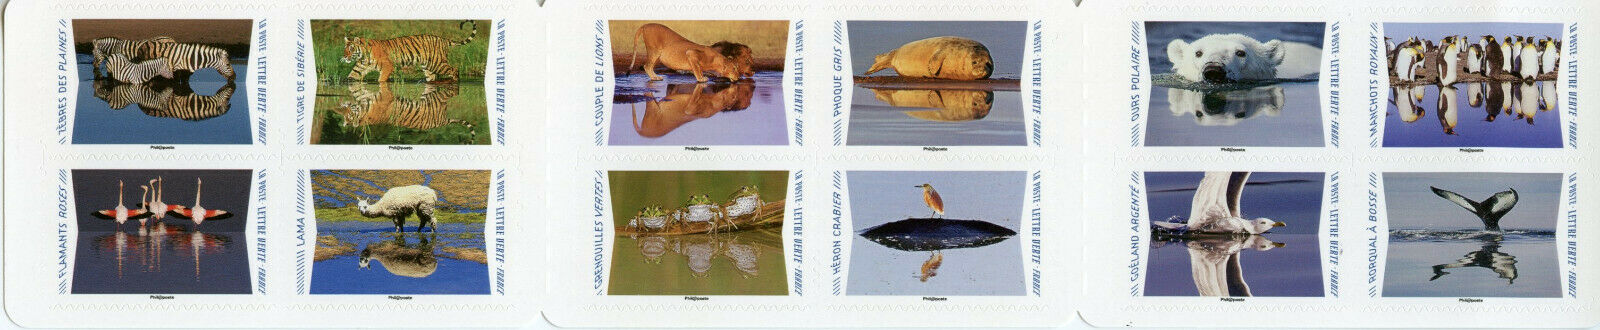 France Wild Animals Stamps 2020 MNH Lions Tigers Zebras Penguins 12v S/A Booklet